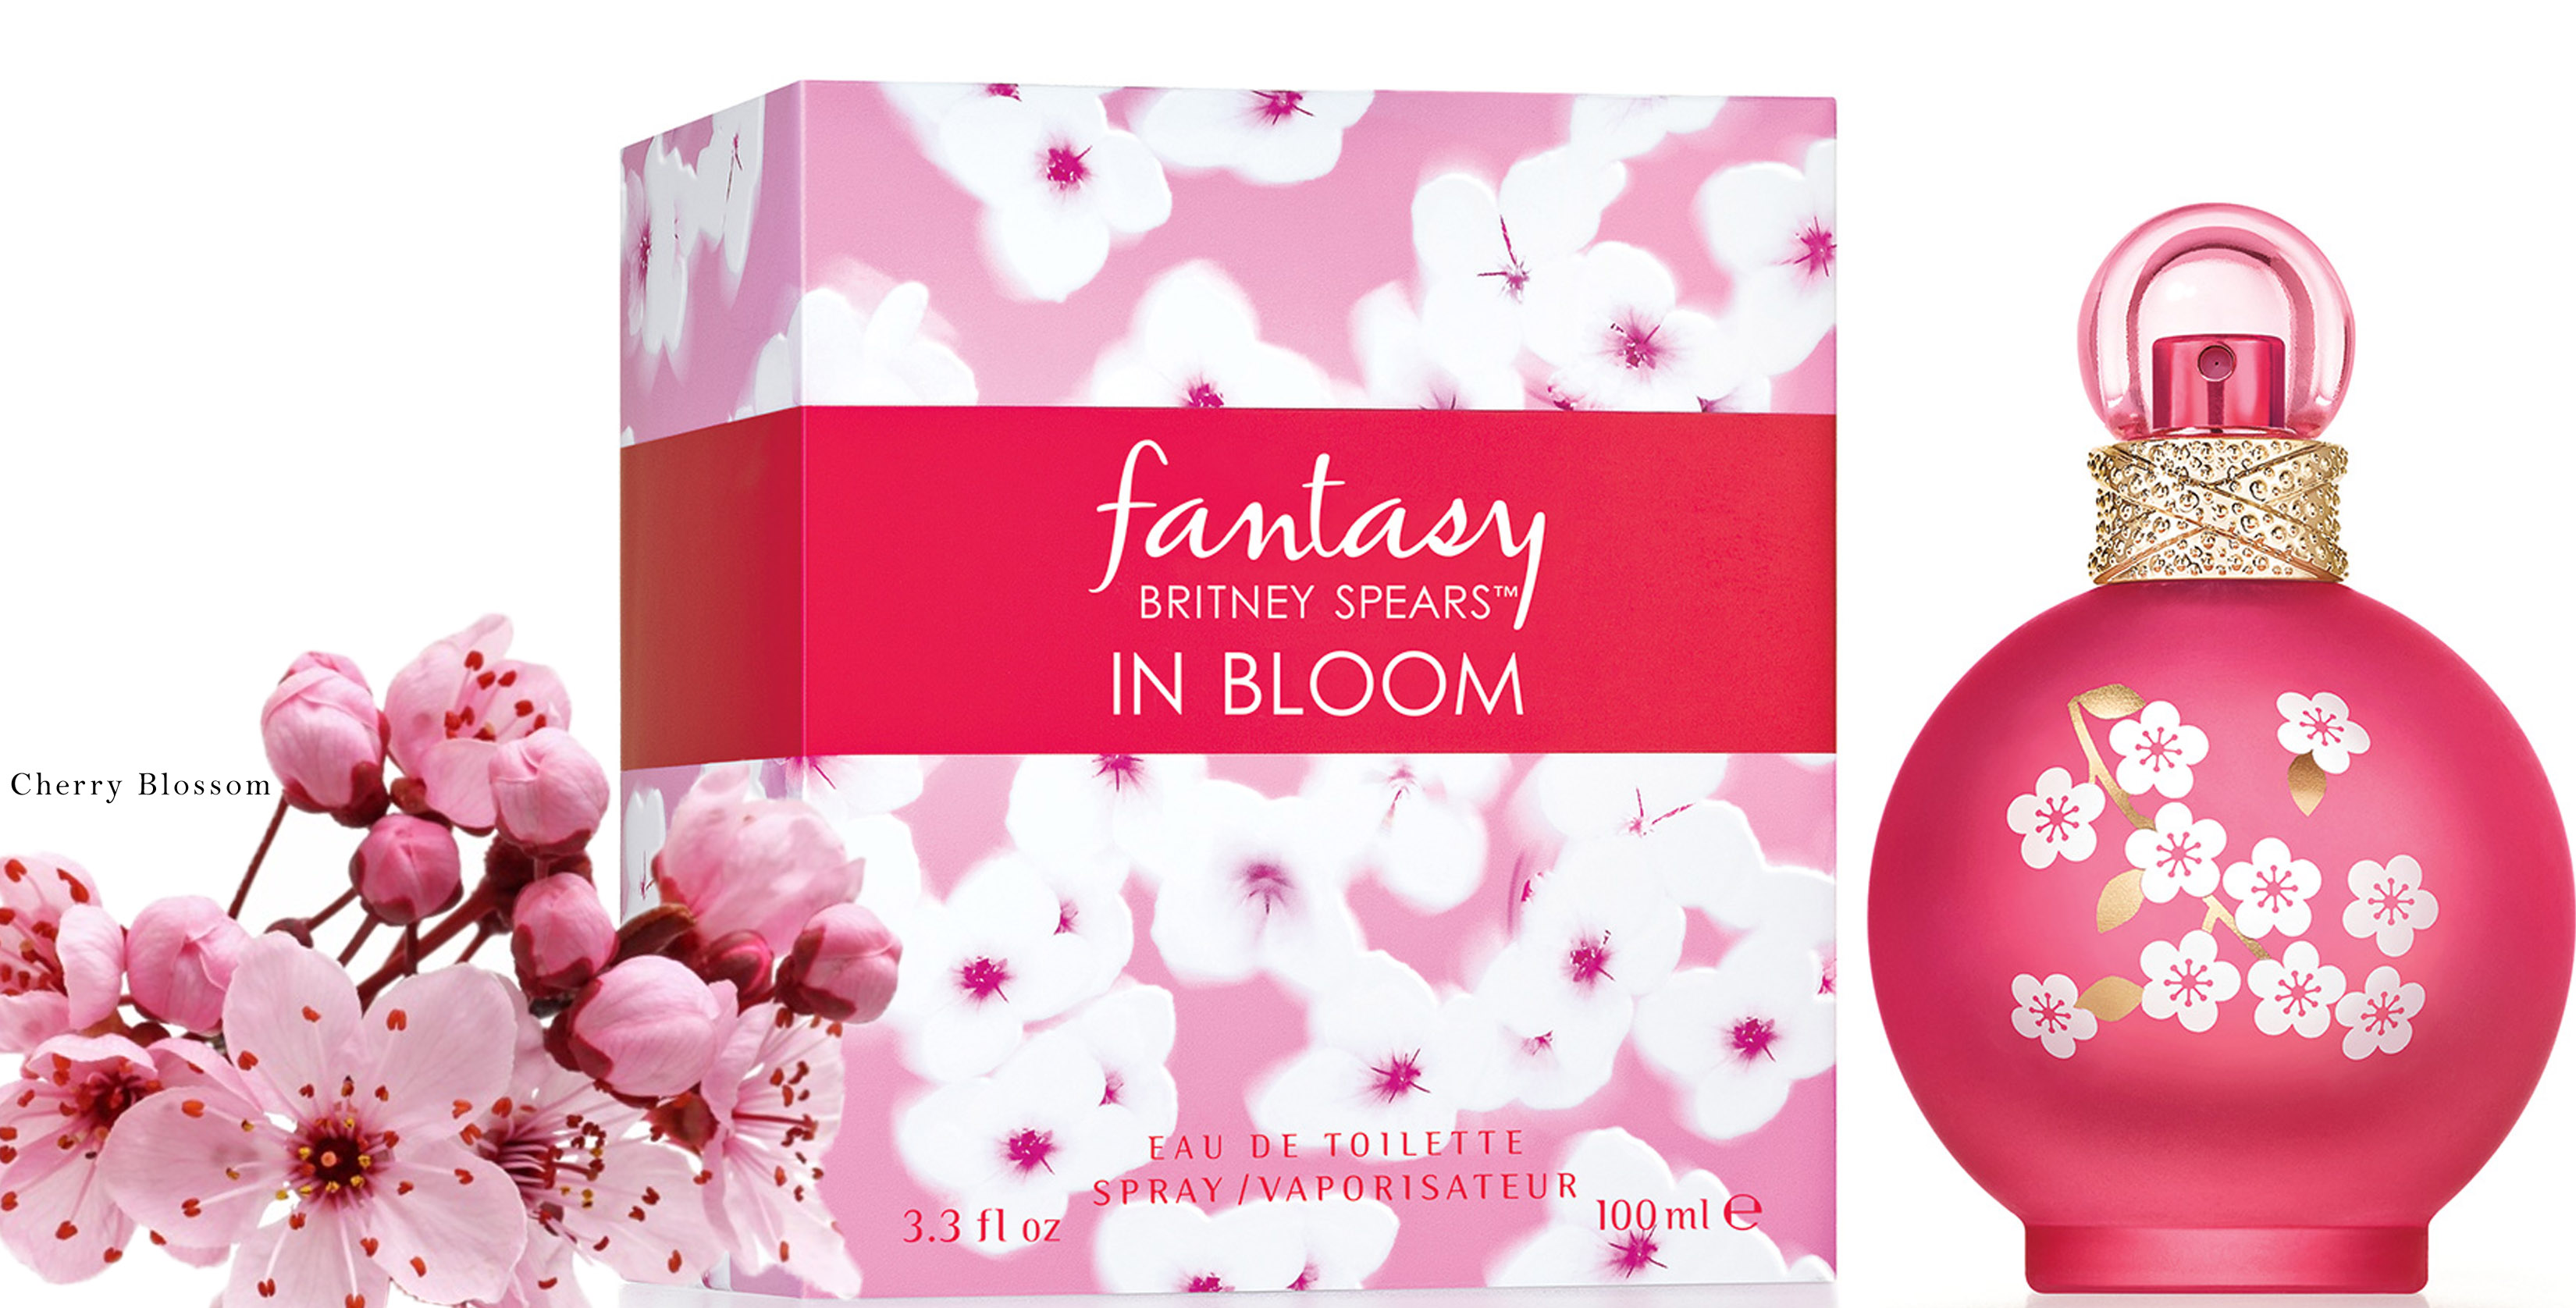 britney spears fantasy in bloom fragrance